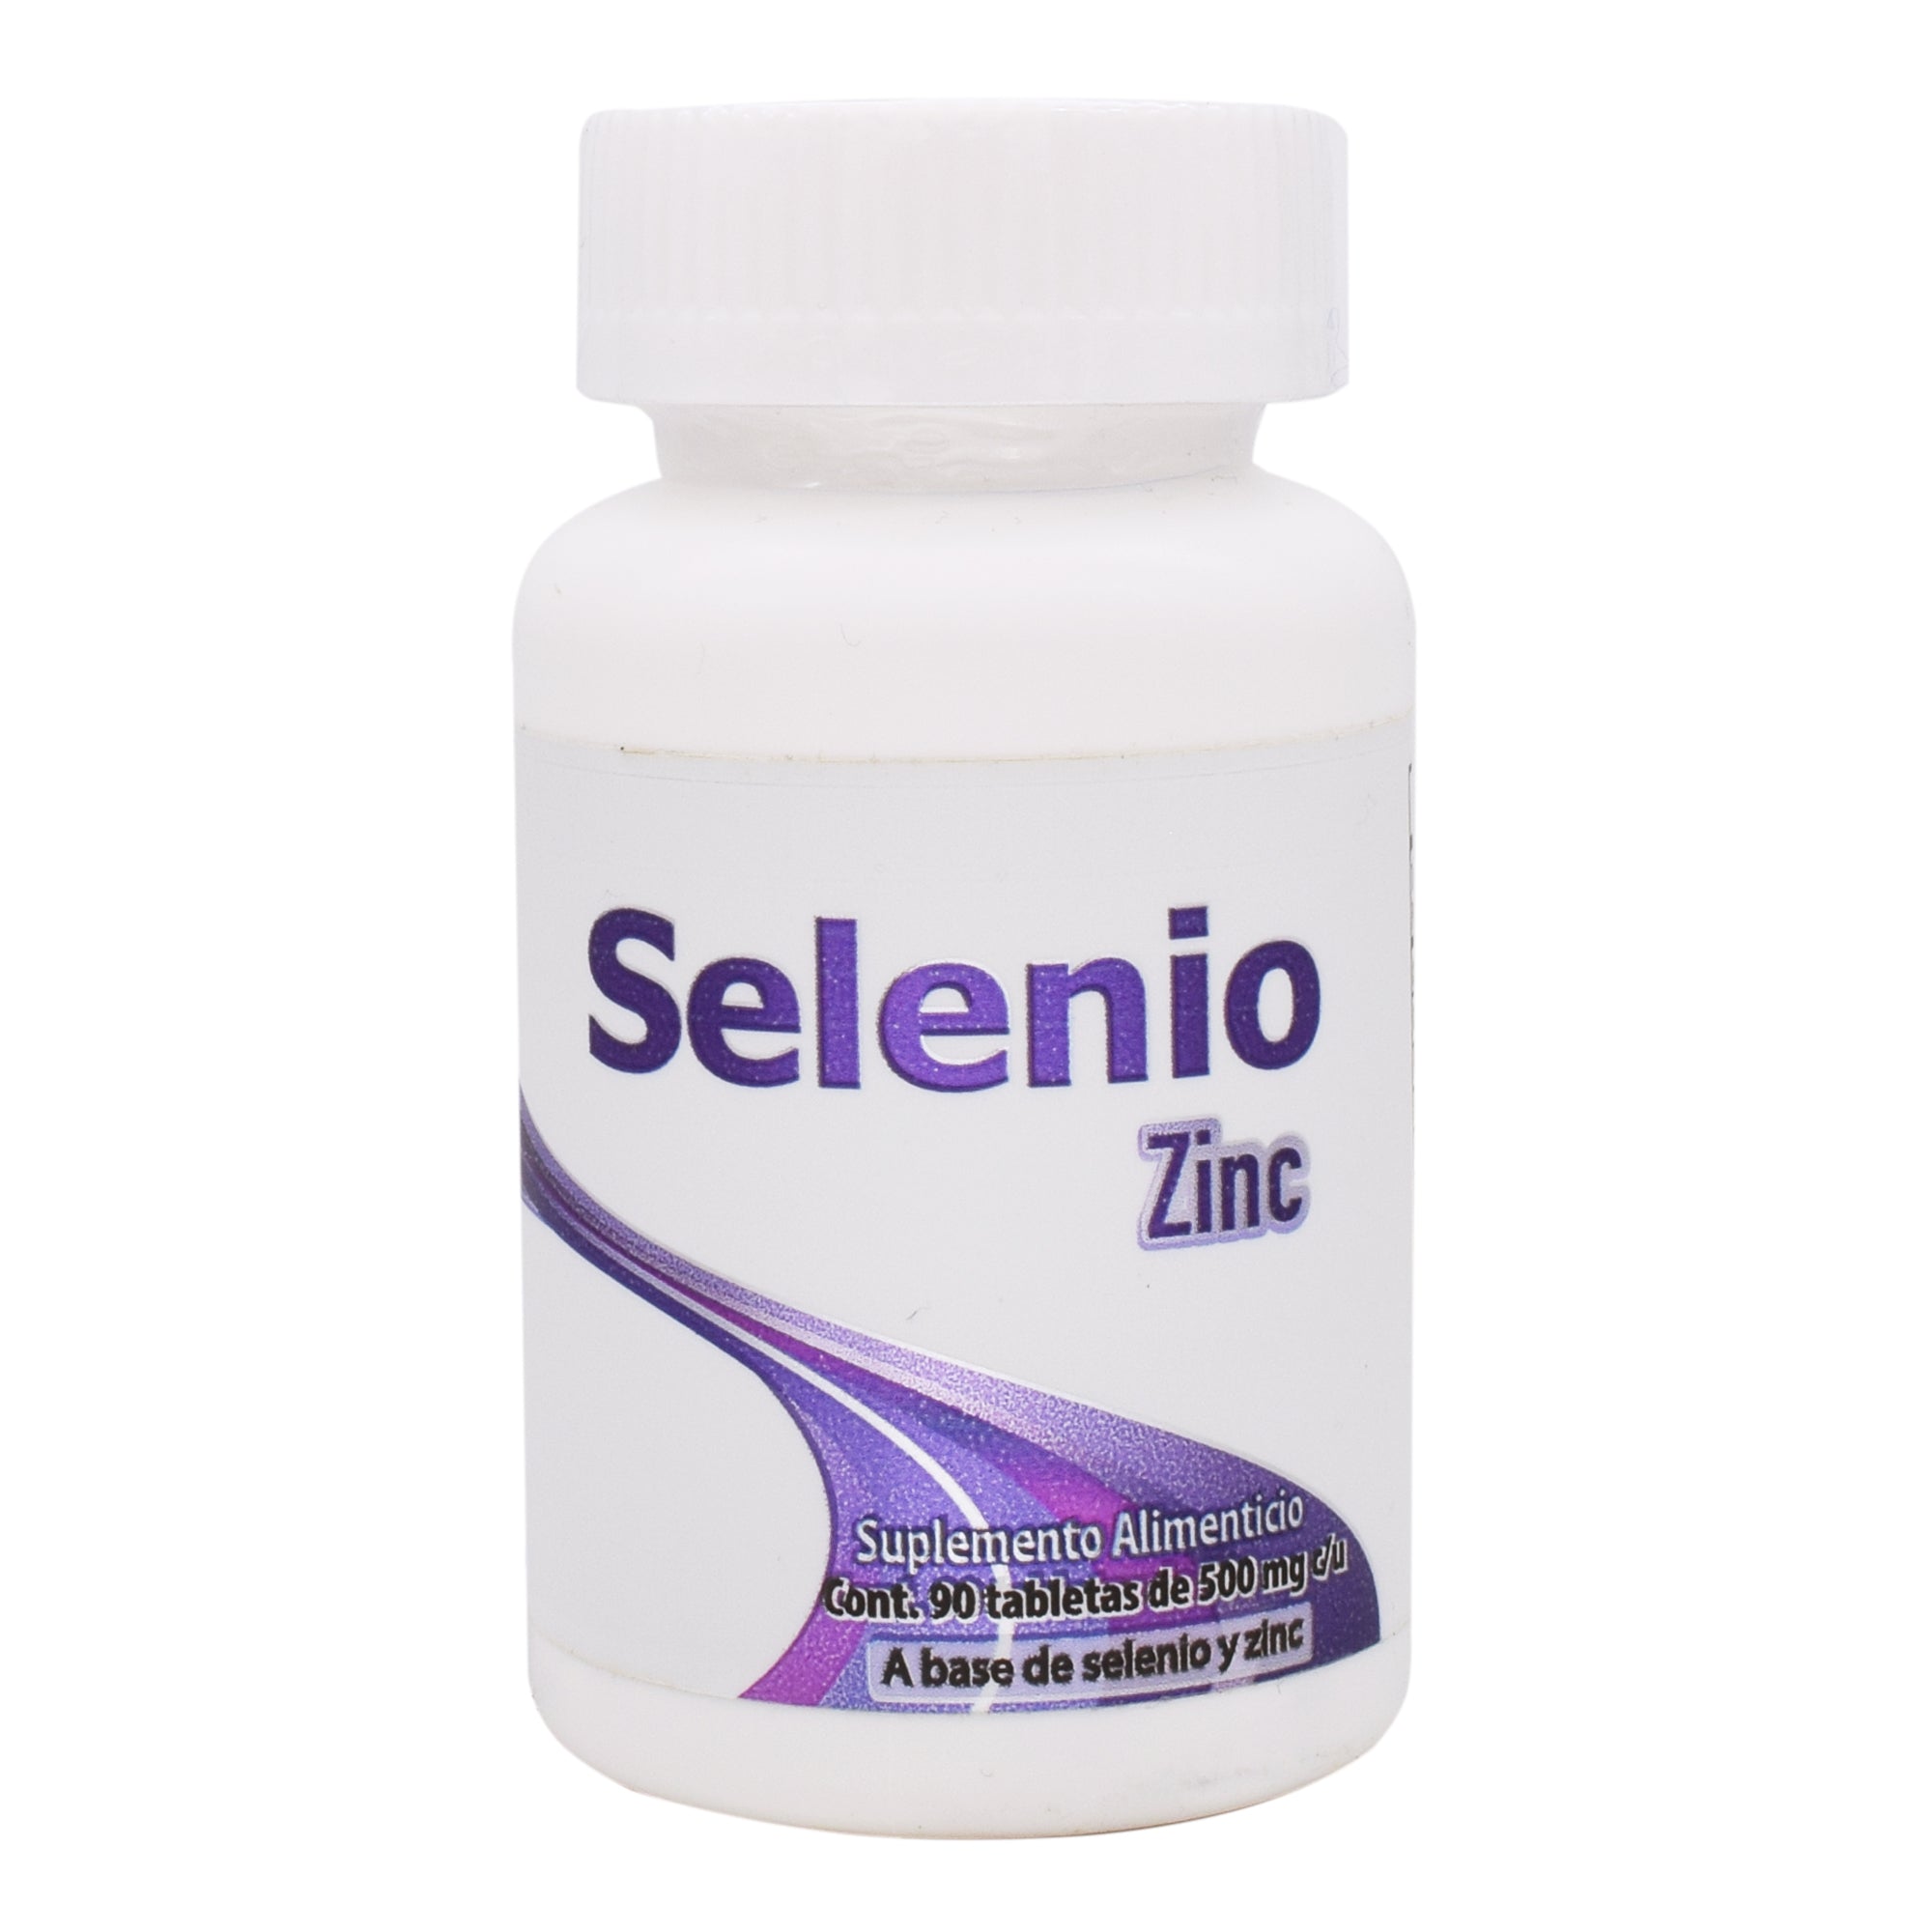 Selenio zinc 90 tab